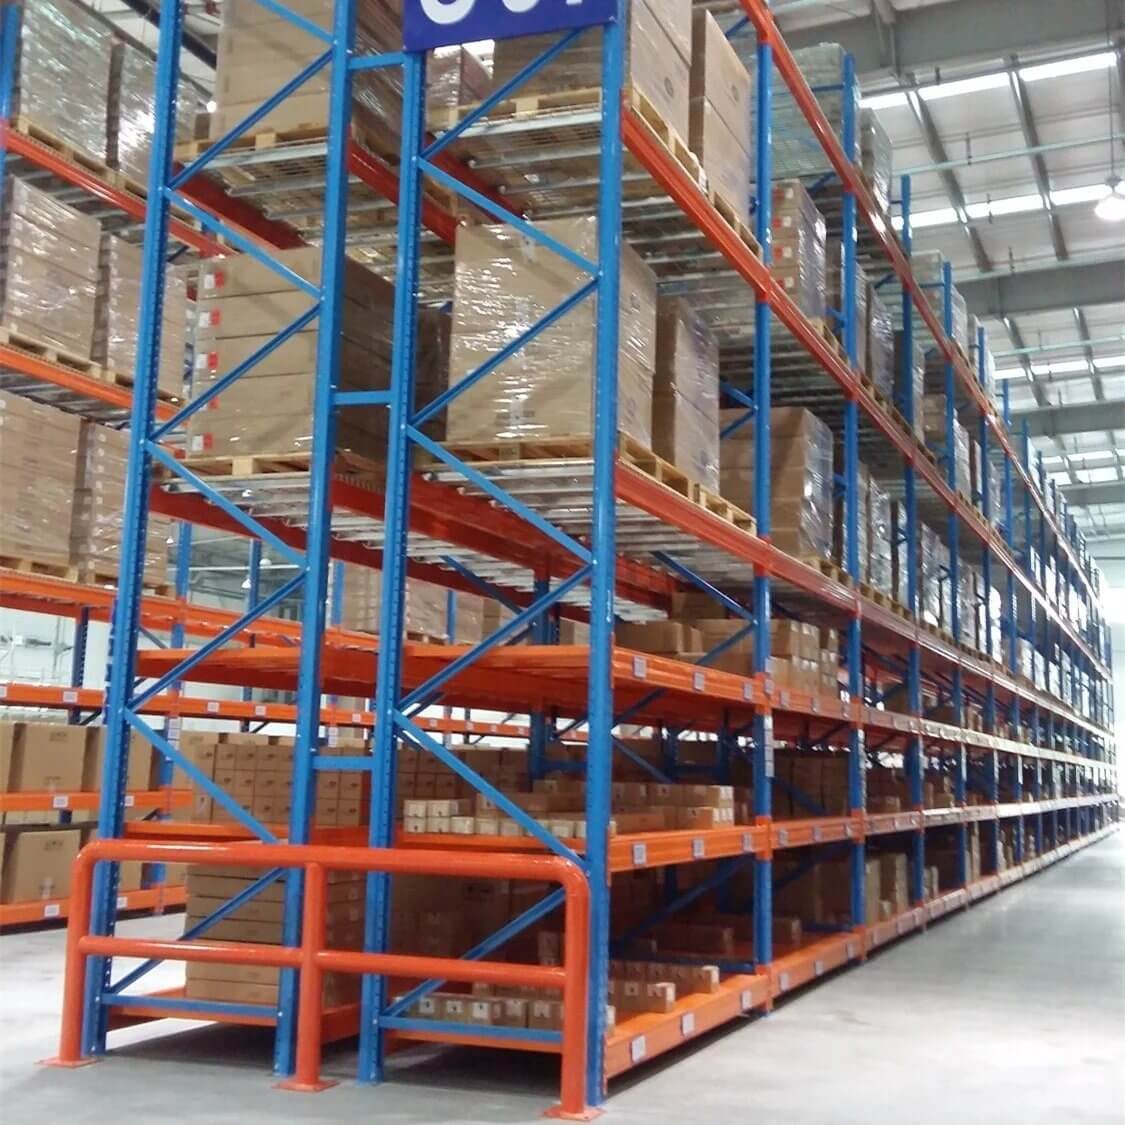 Warehouse Storage Solution Manufacturers In Delhi